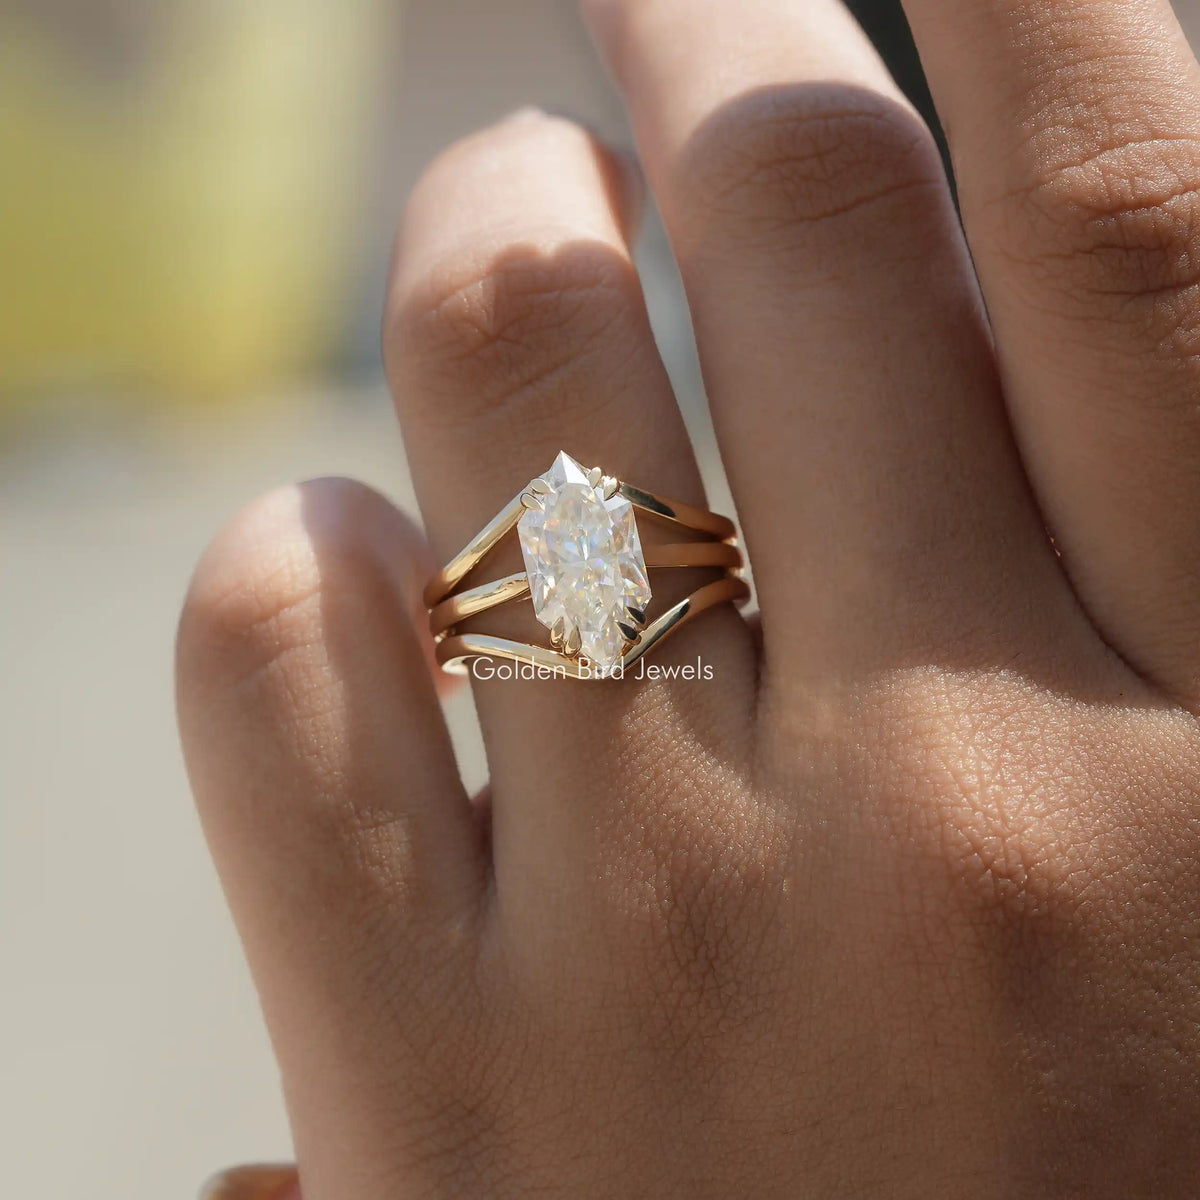 [3.15 Carat moissanite dutch marquise cut ring set for women]-[Golden Bird Jewels]